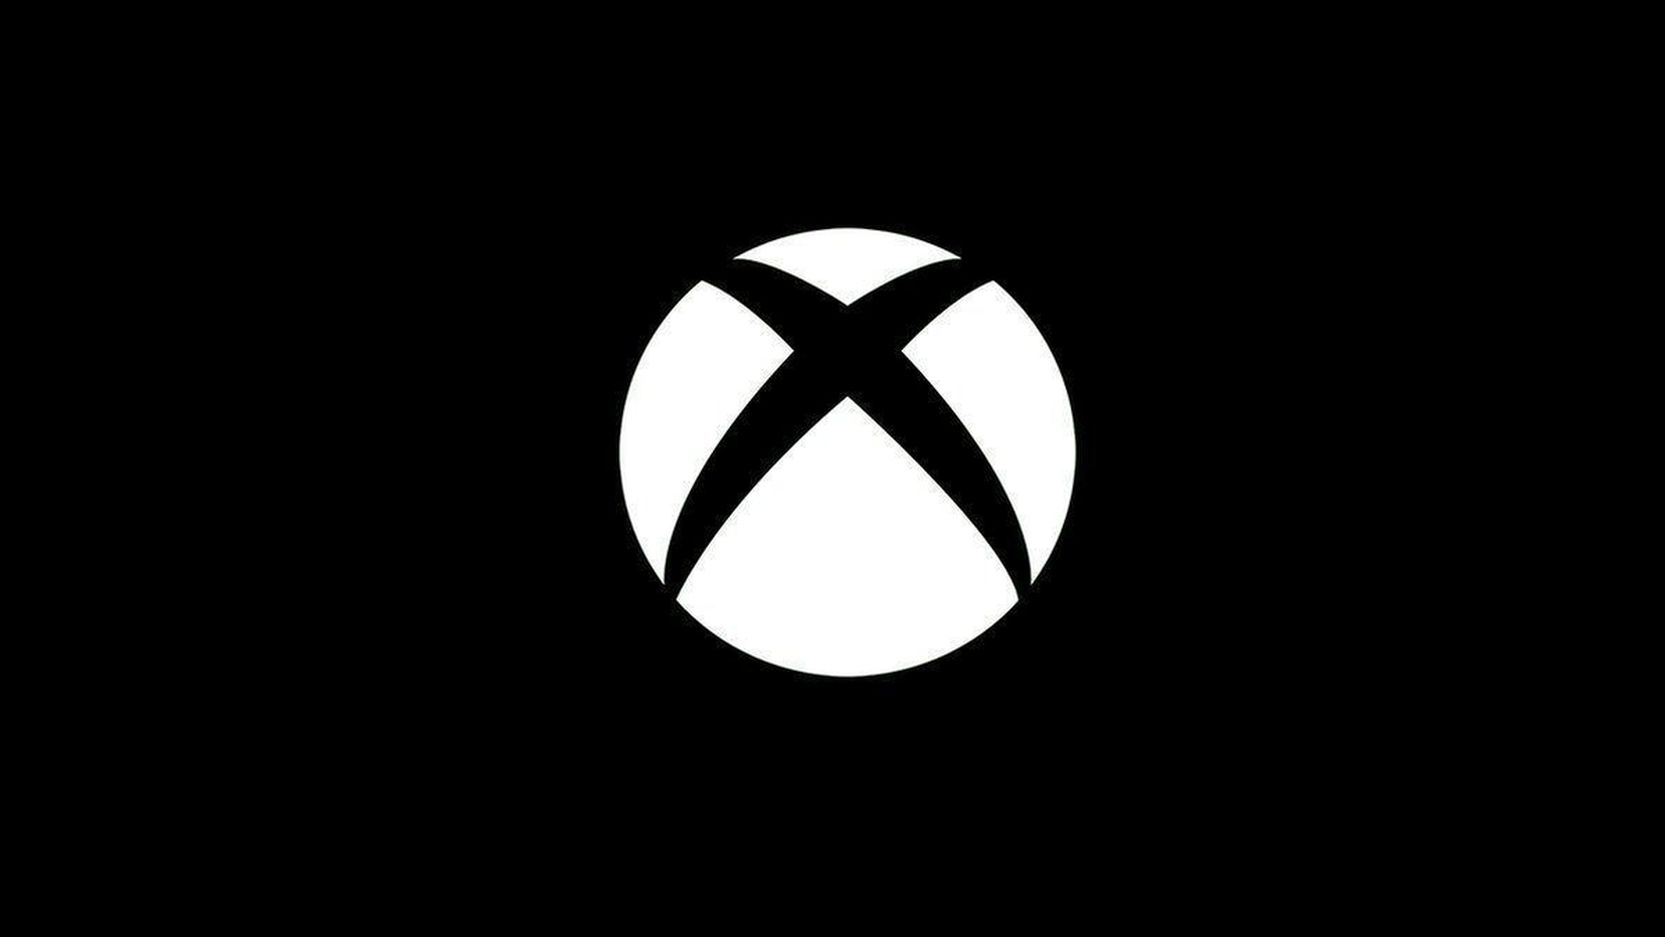 Microsoft aceptará el acuerdo si Activision Blizzard reconoce un sindicato